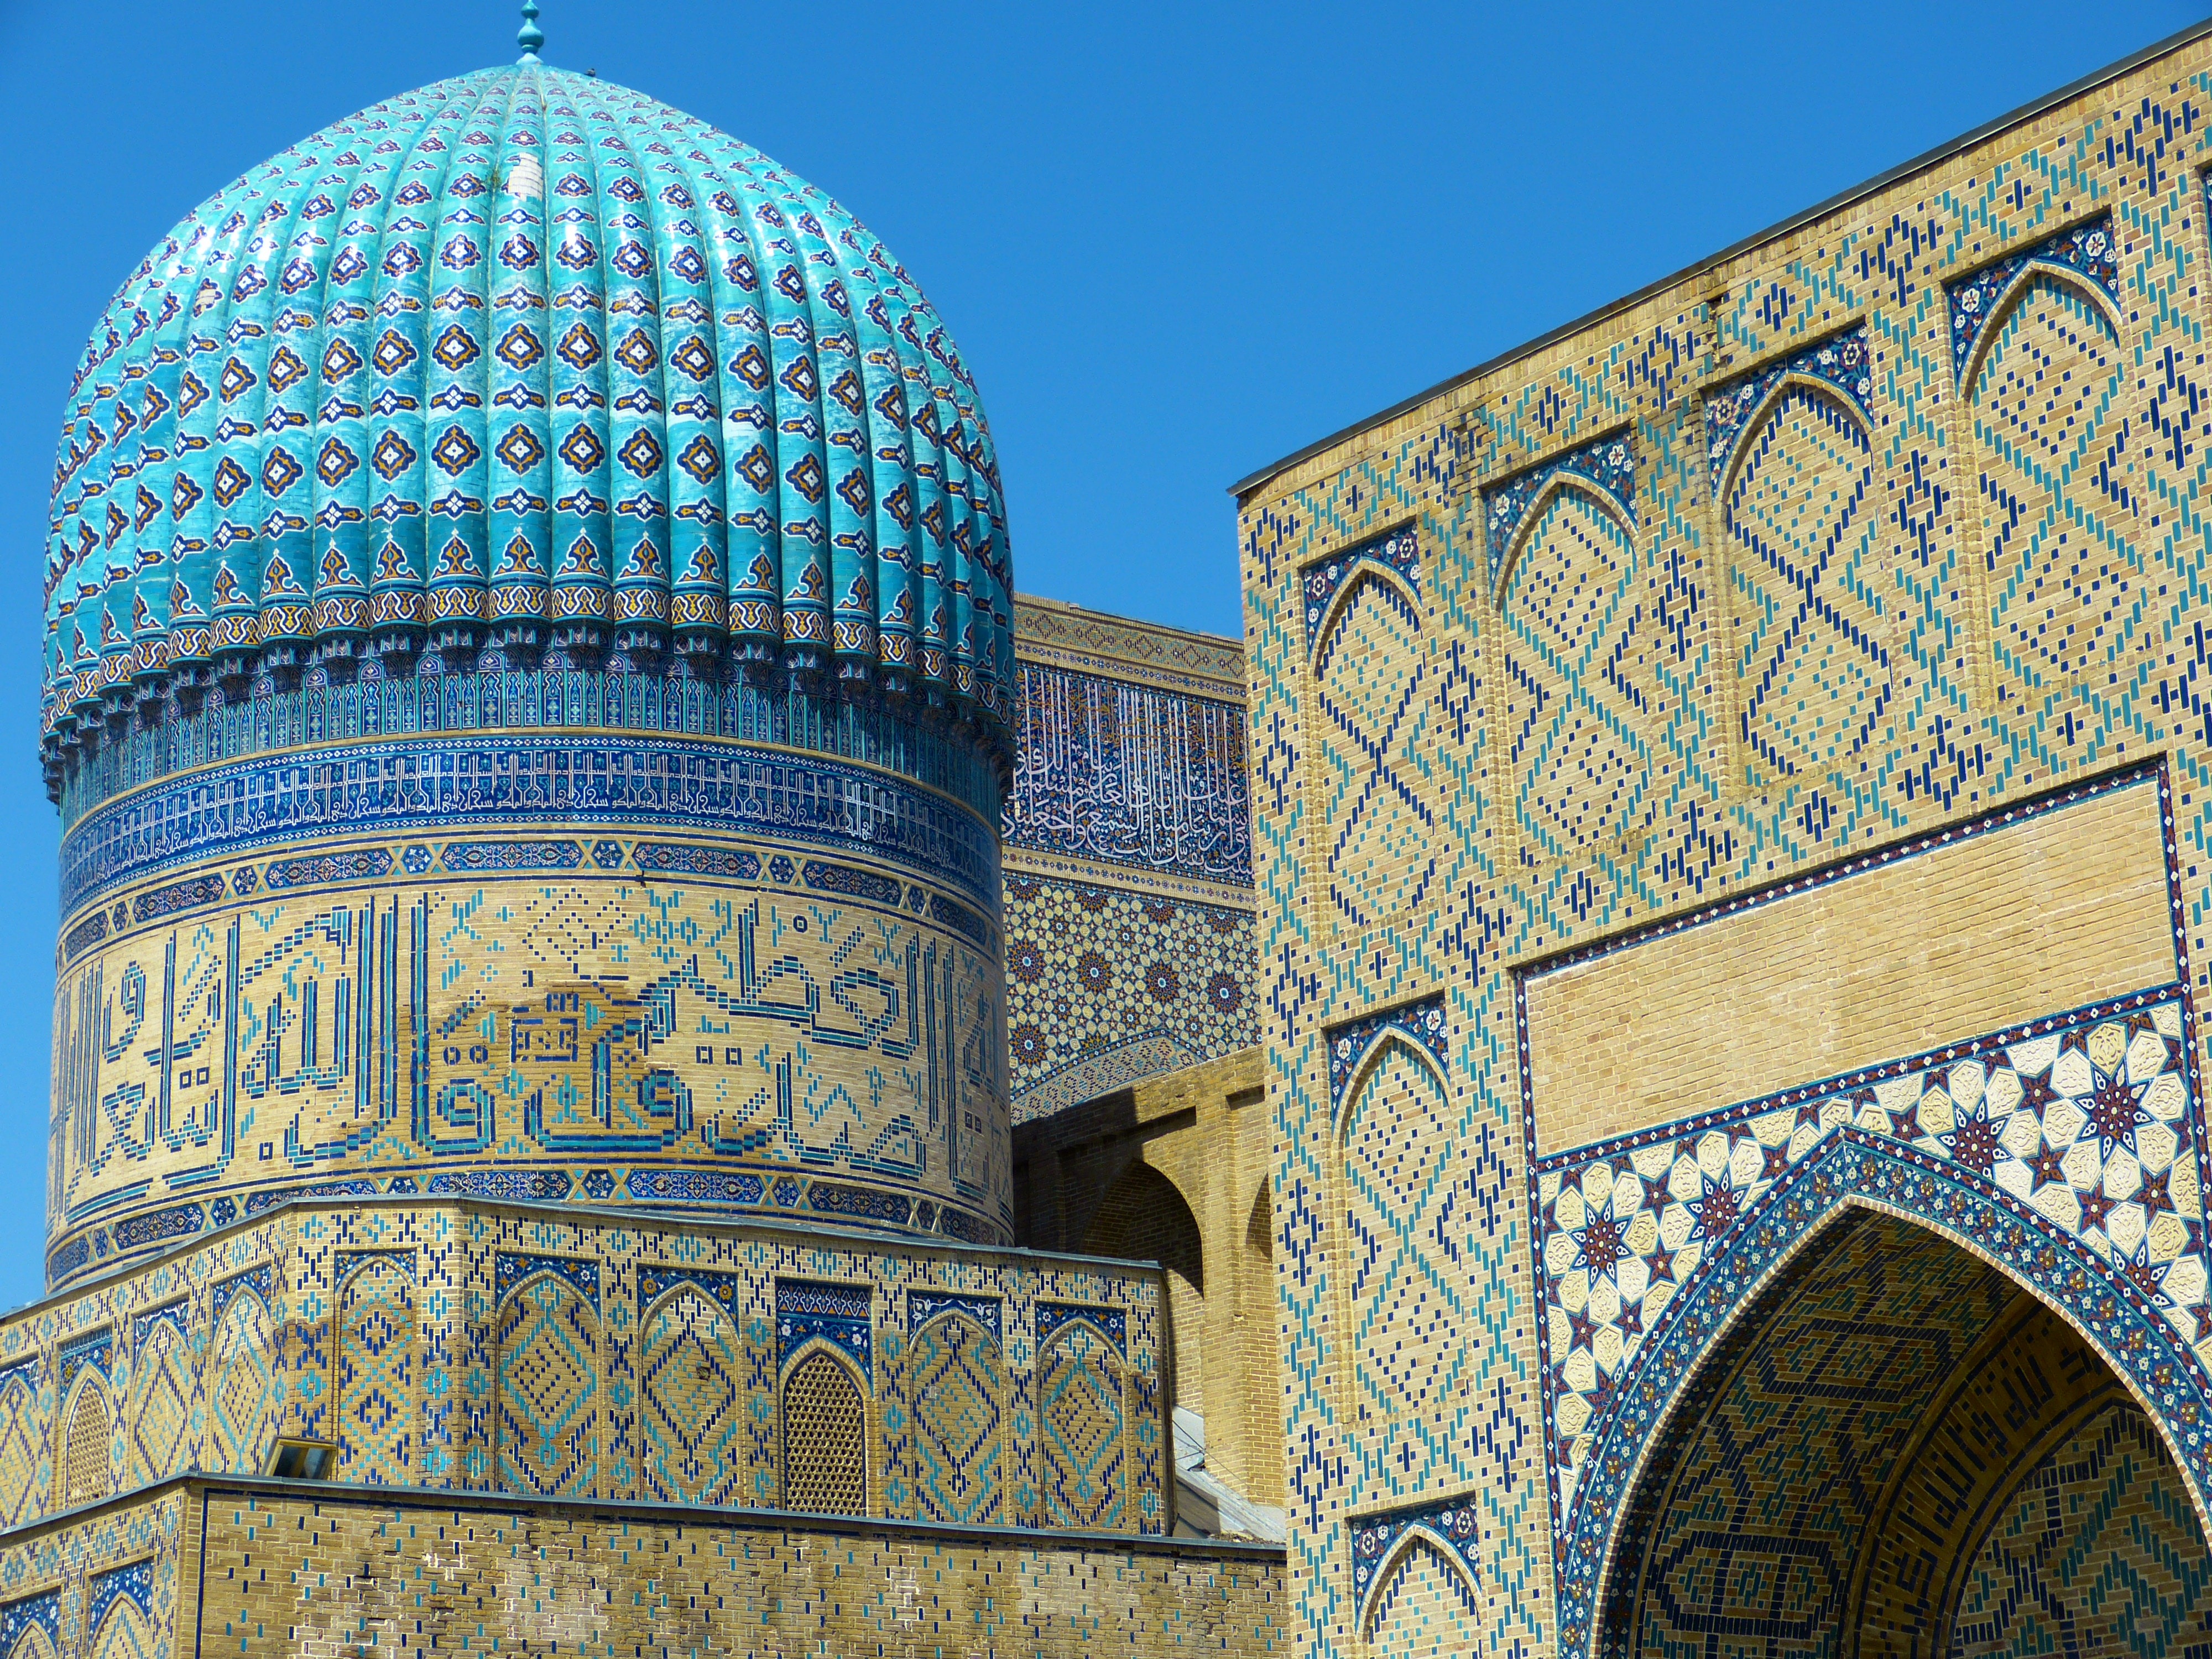 ウズベキスタン、さらに900MWのPVを入札予定